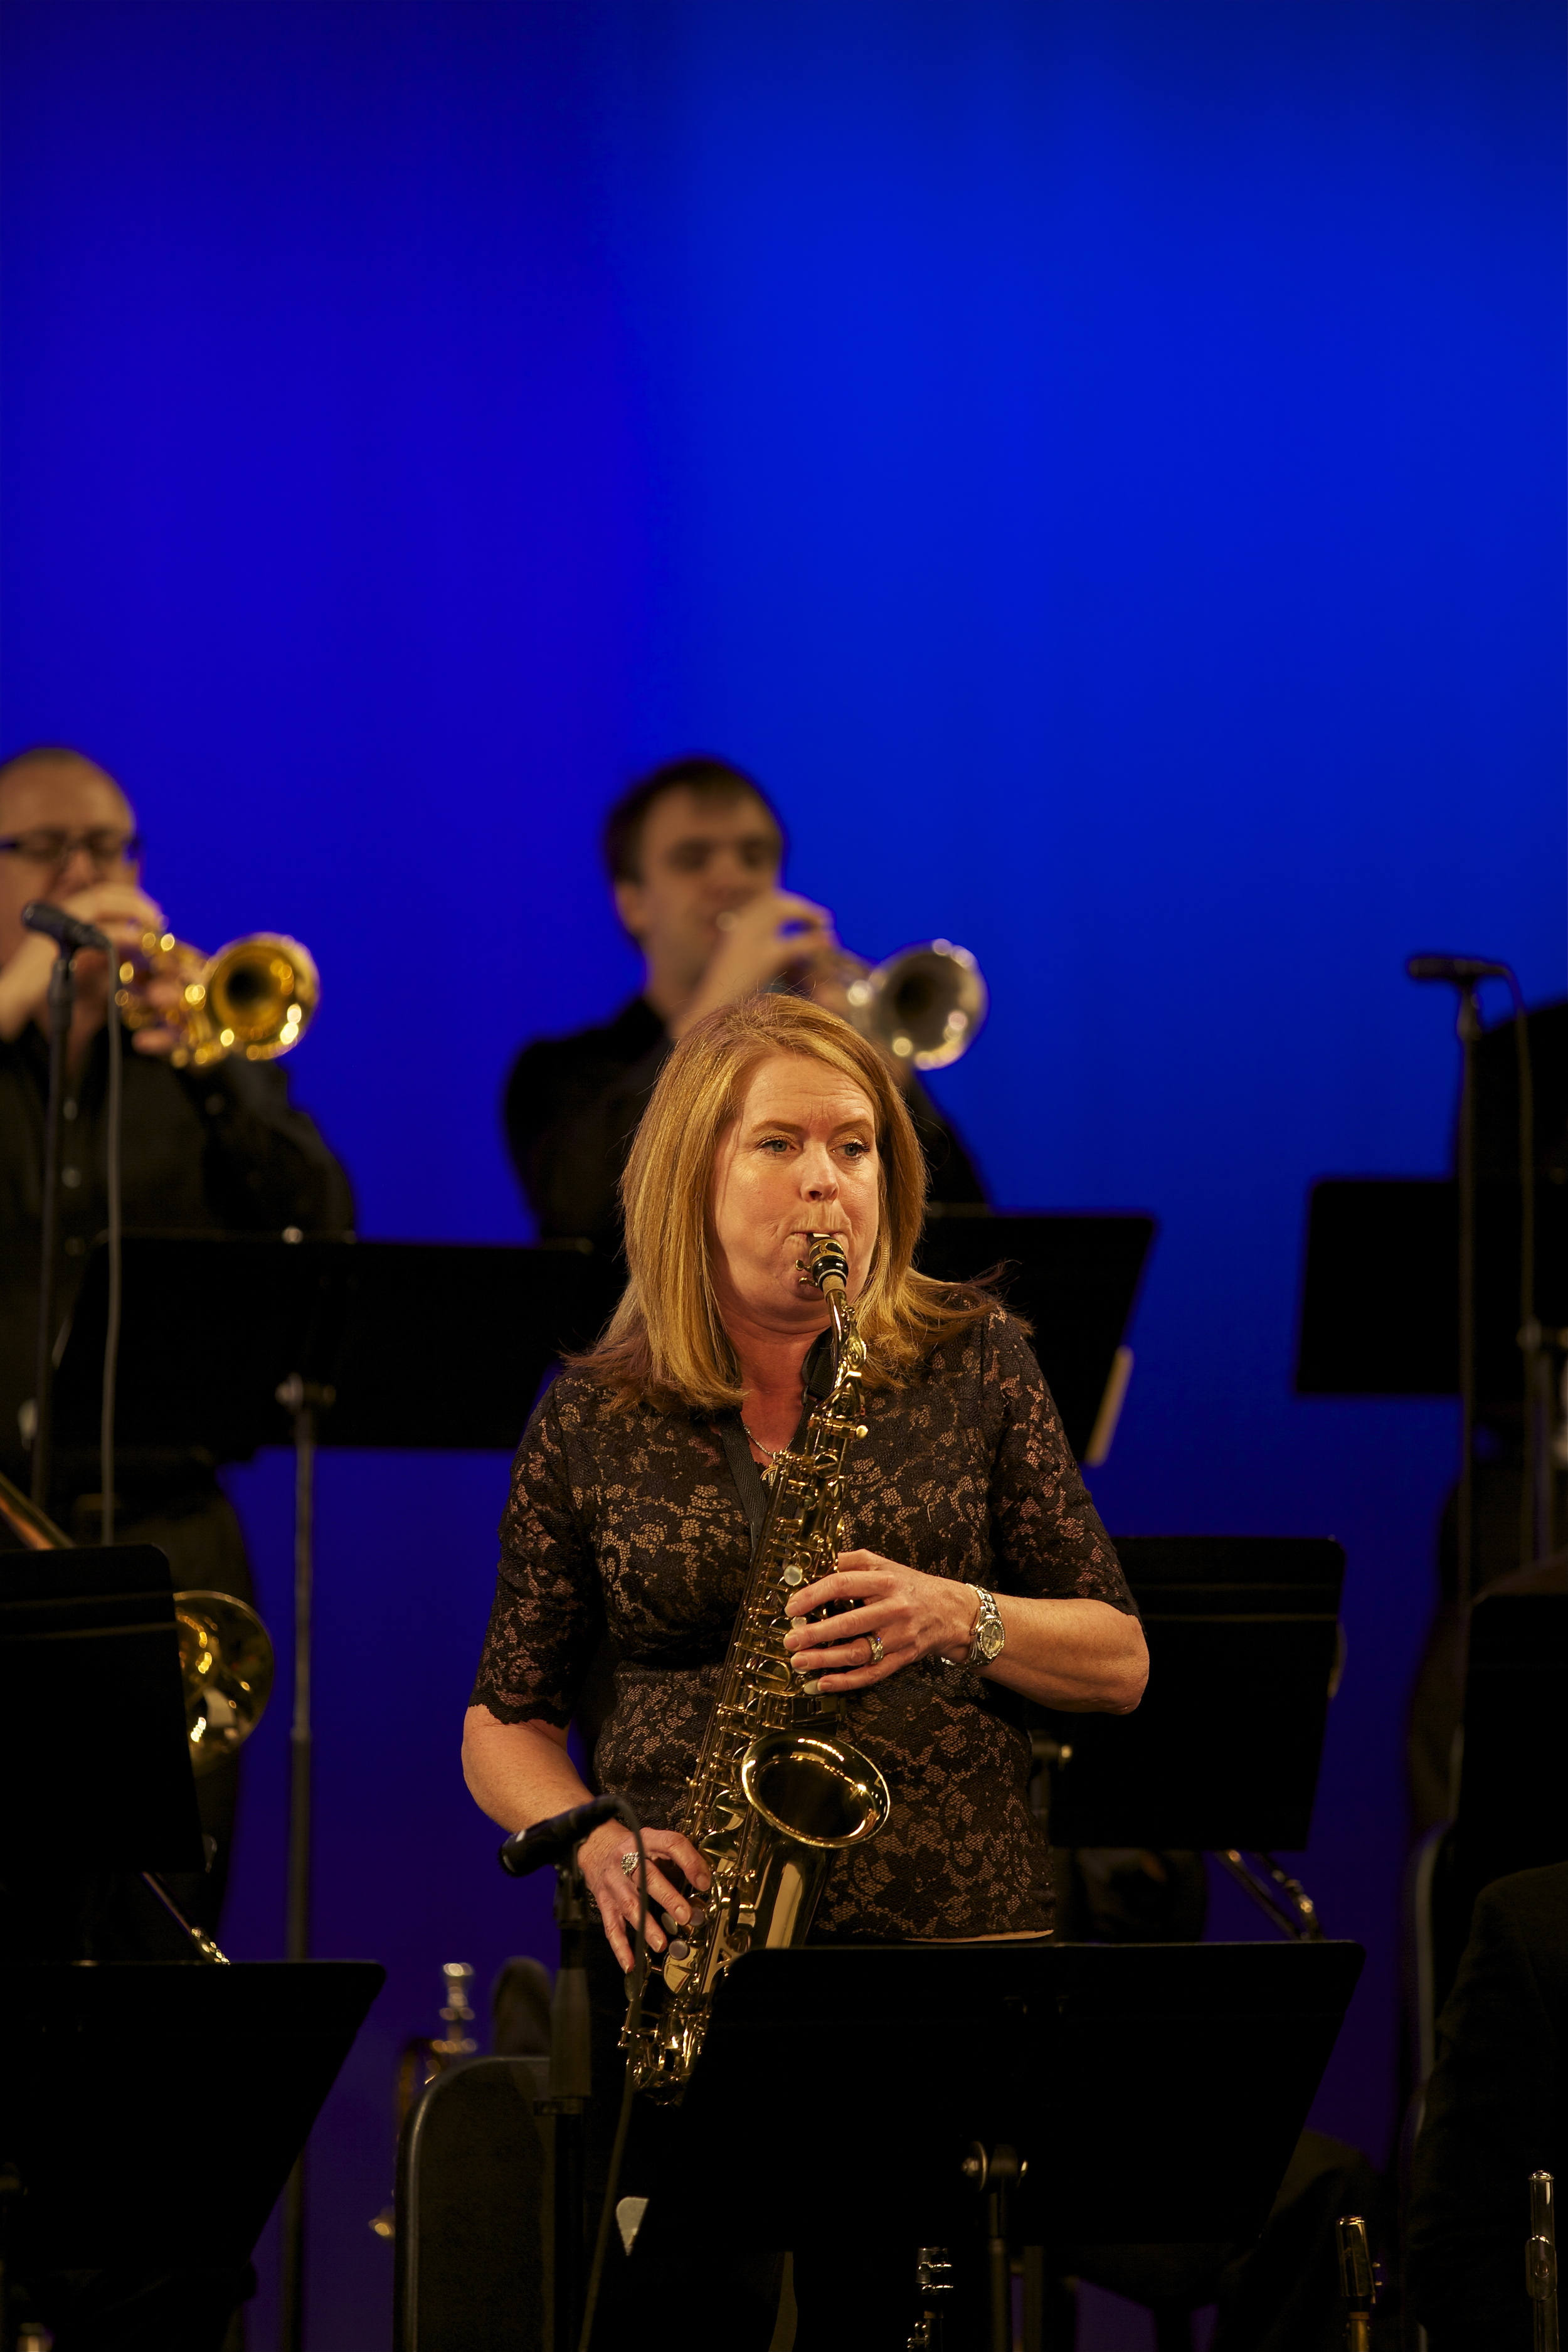 Lori Risse, alto saxophone